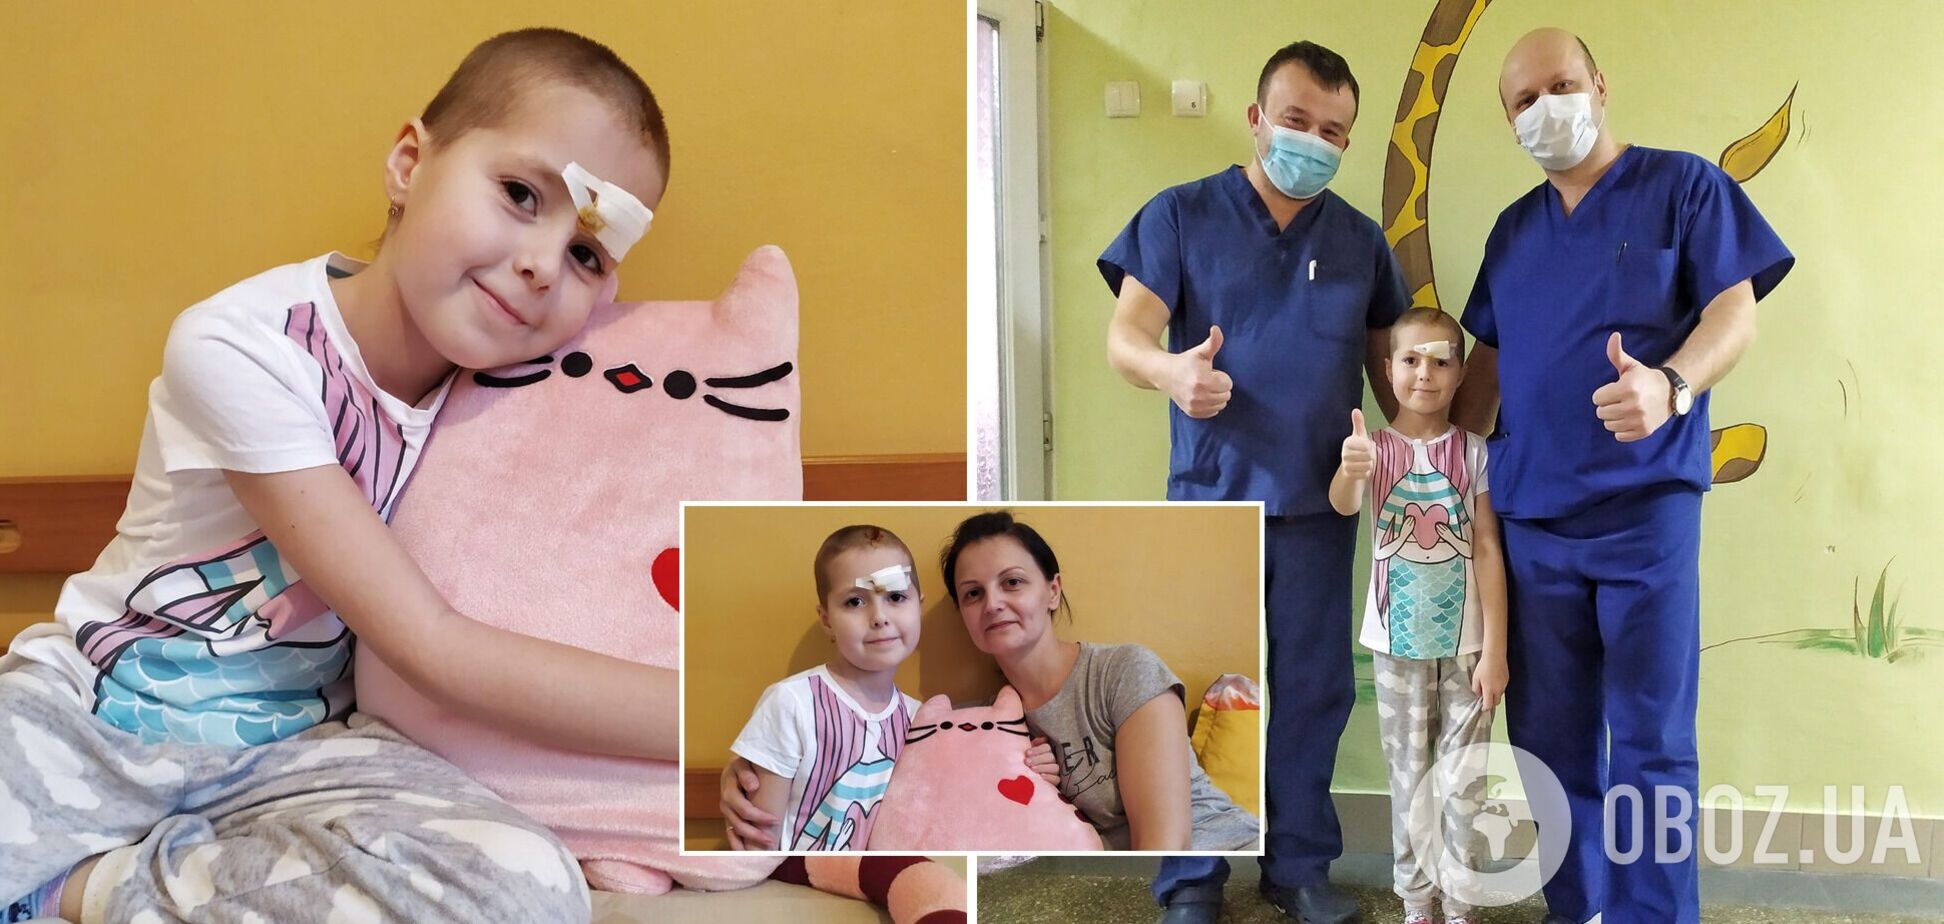 Во Львове 9-летней девочке провели сверхсложную операцию